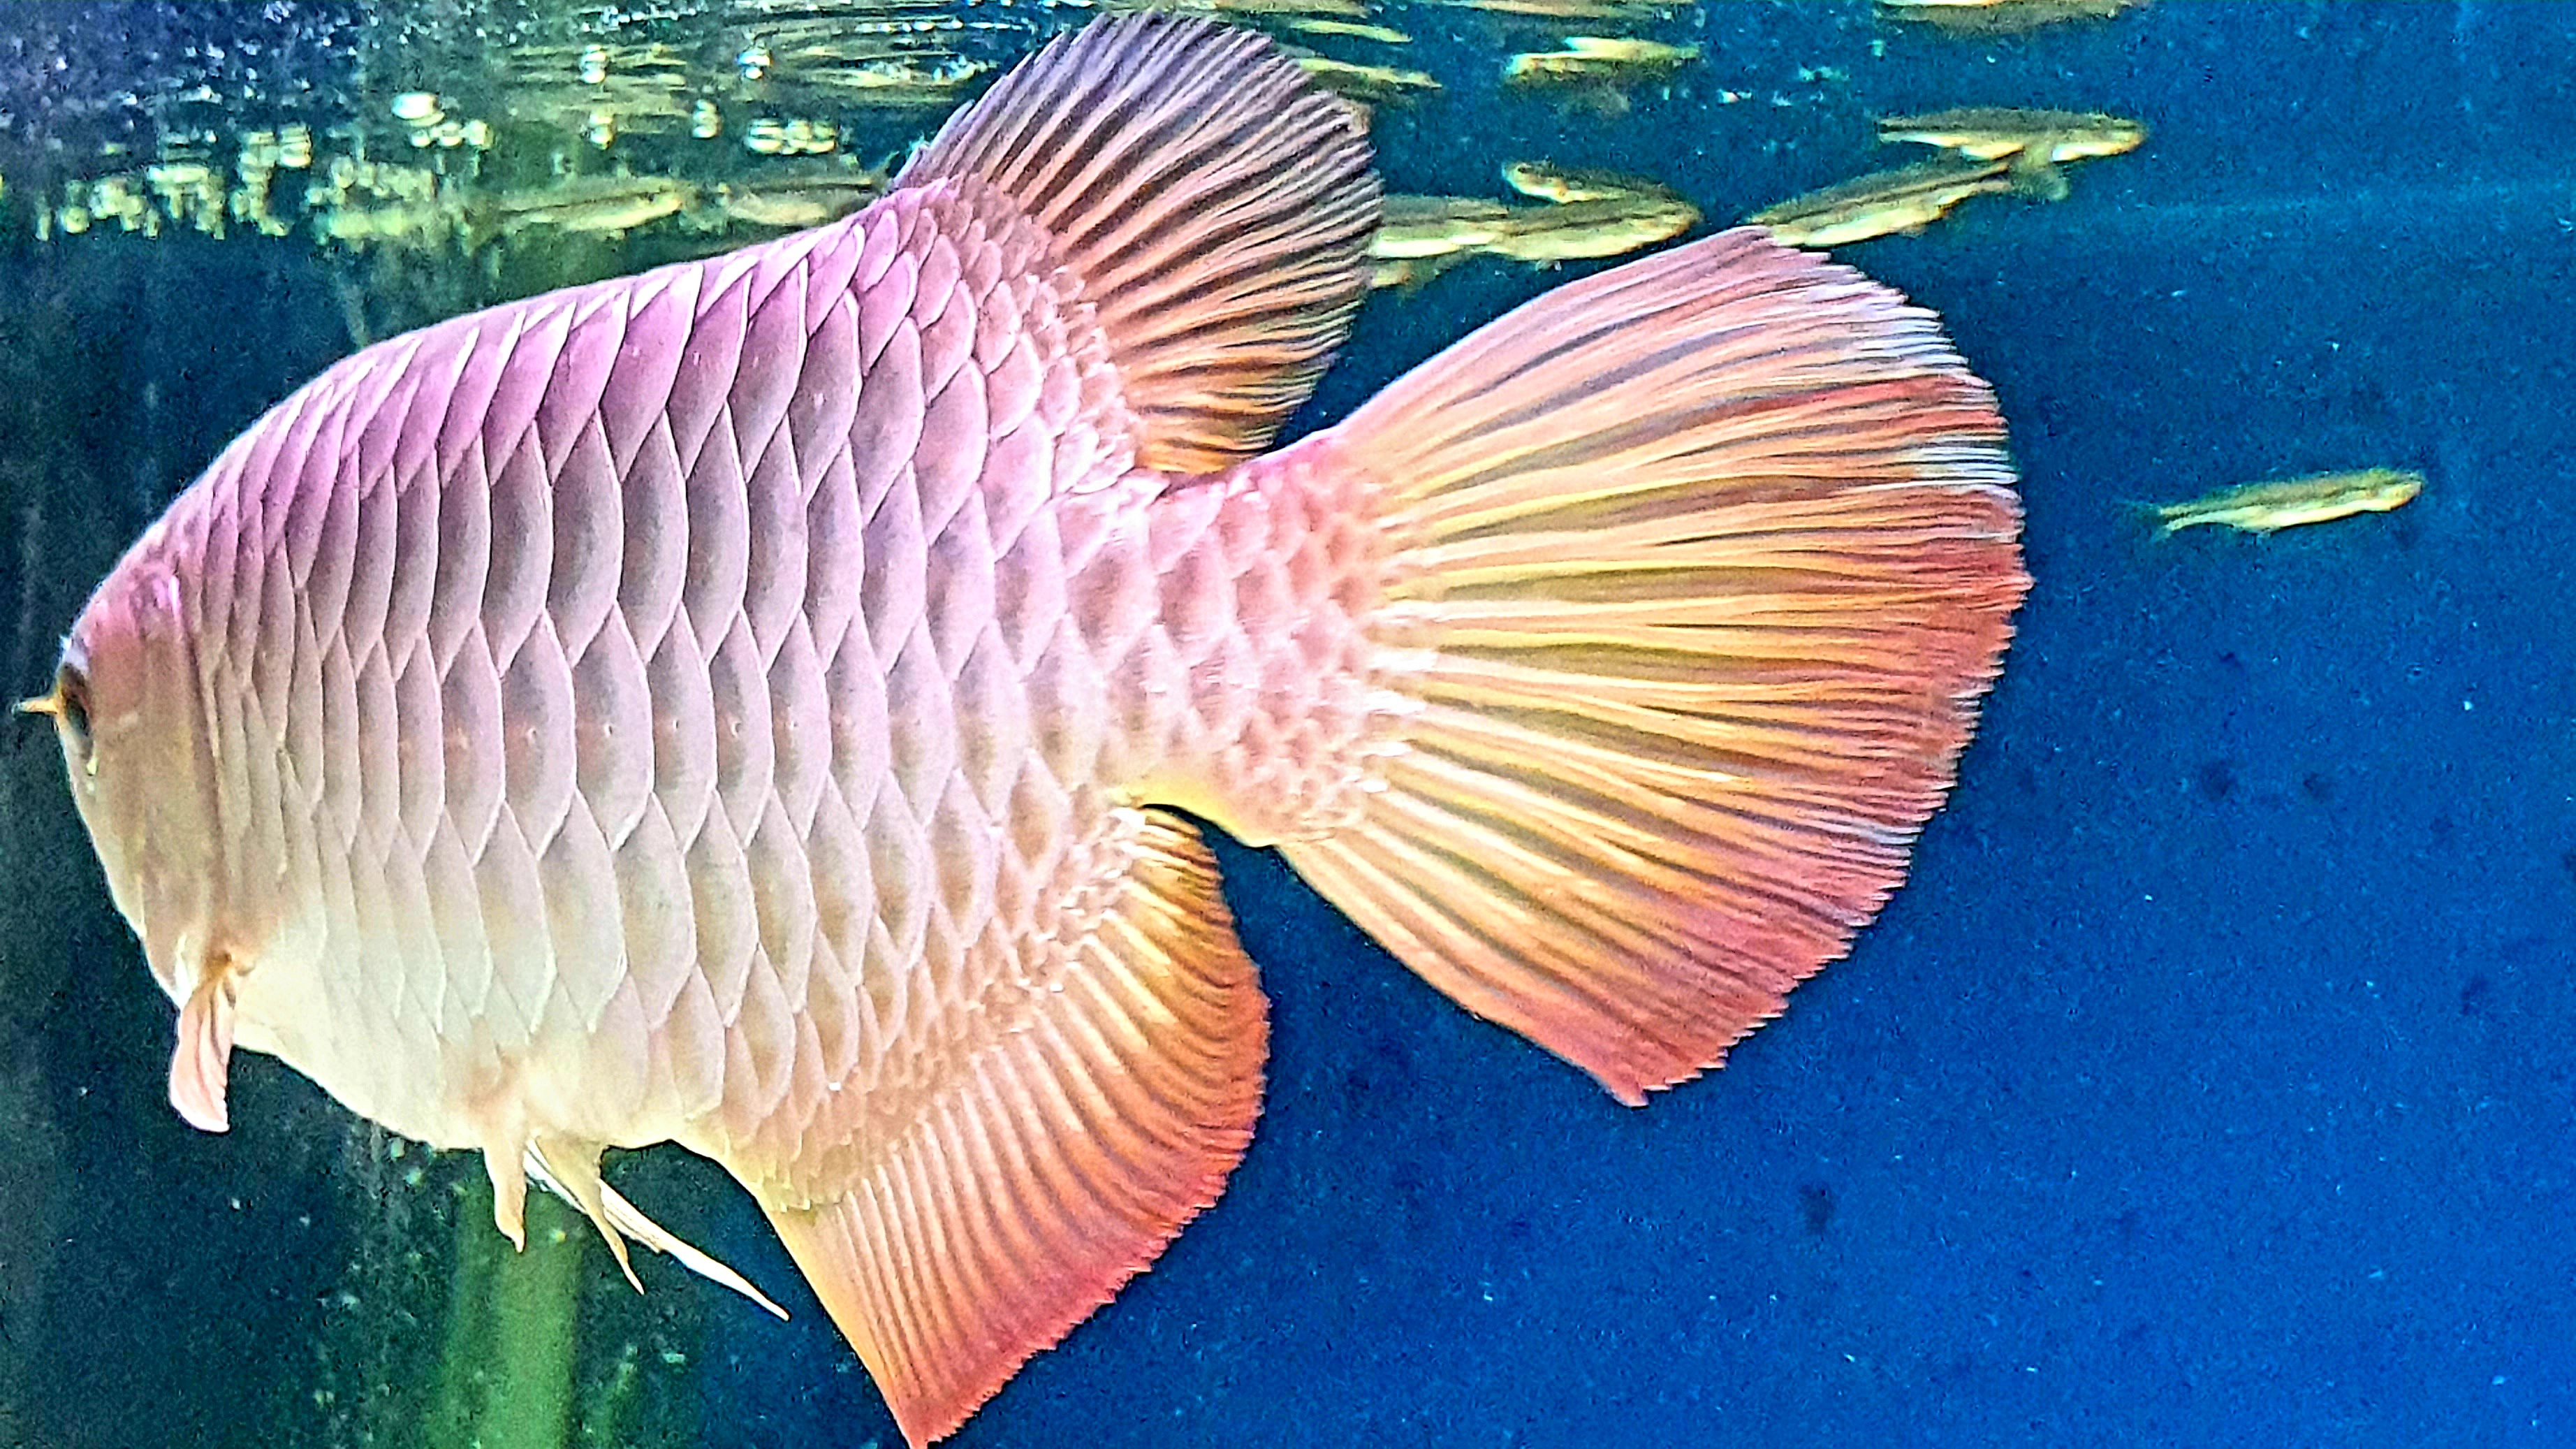 Malaysia Golden Arowana Ikan Hiasan Termahal Penyeri Rumah Dan Penawar Stres Orangmuo My